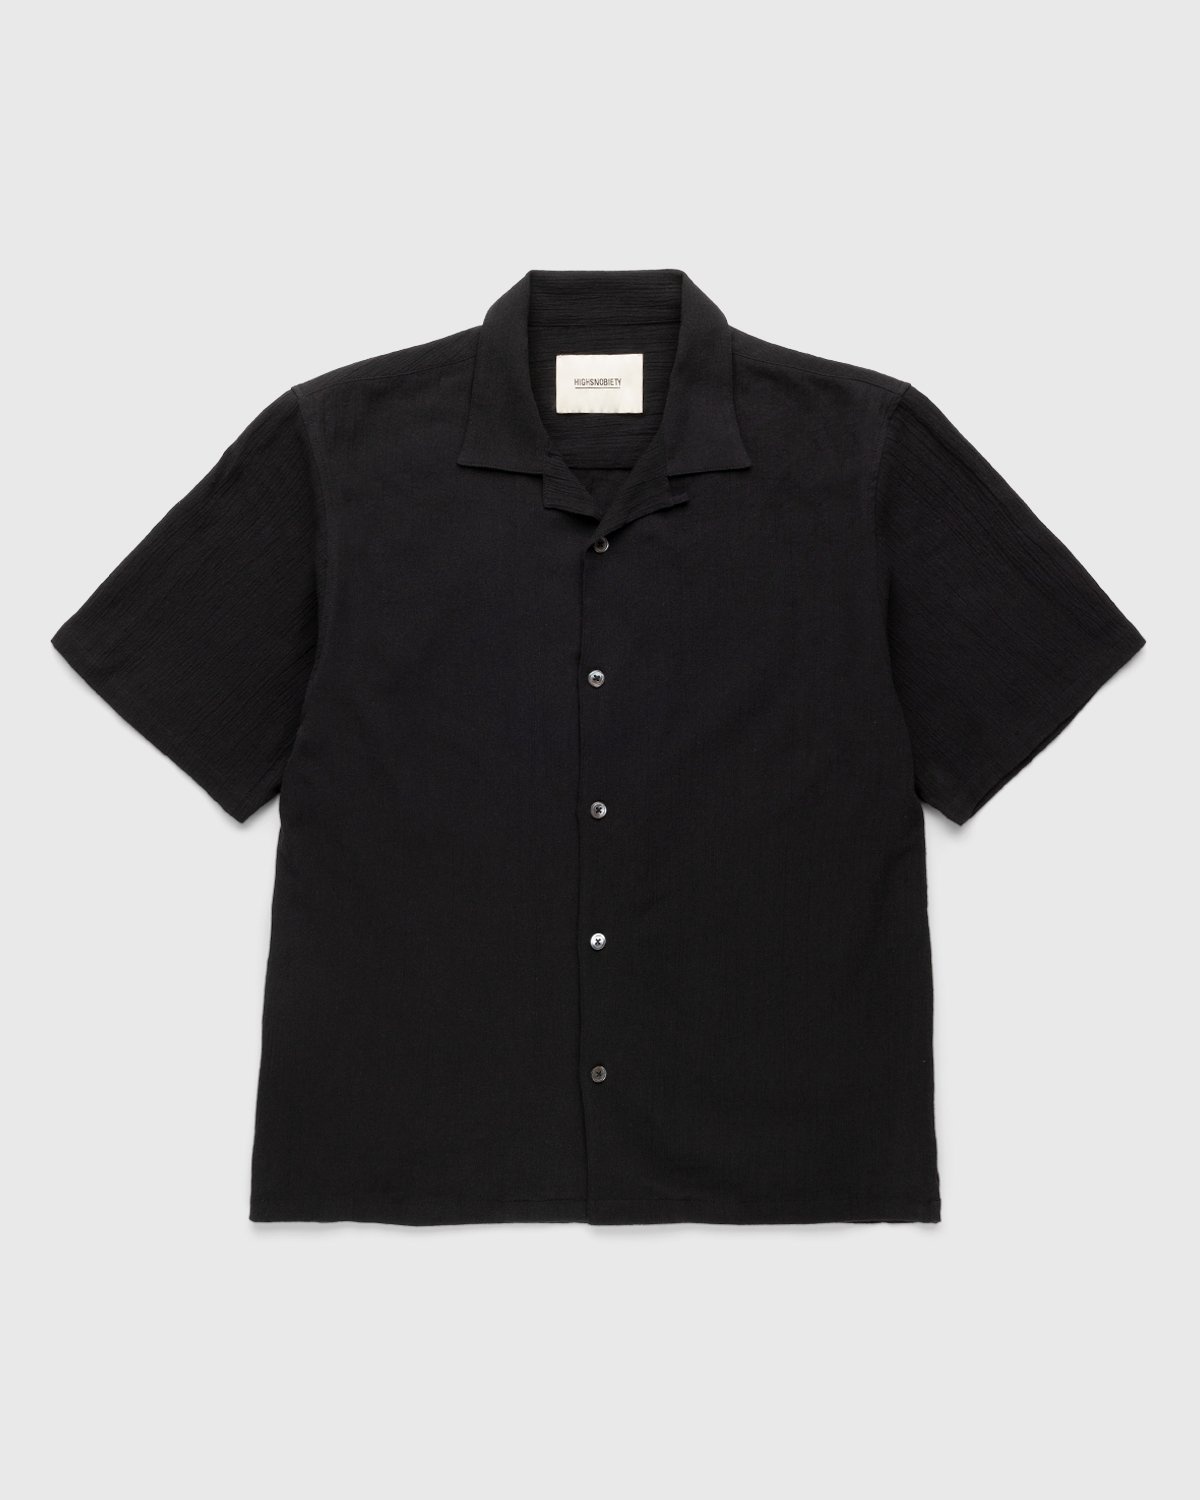 Highsnobiety – Crepe Short Sleeve Shirt Black - Shortsleeve Shirts - Black - Image 1